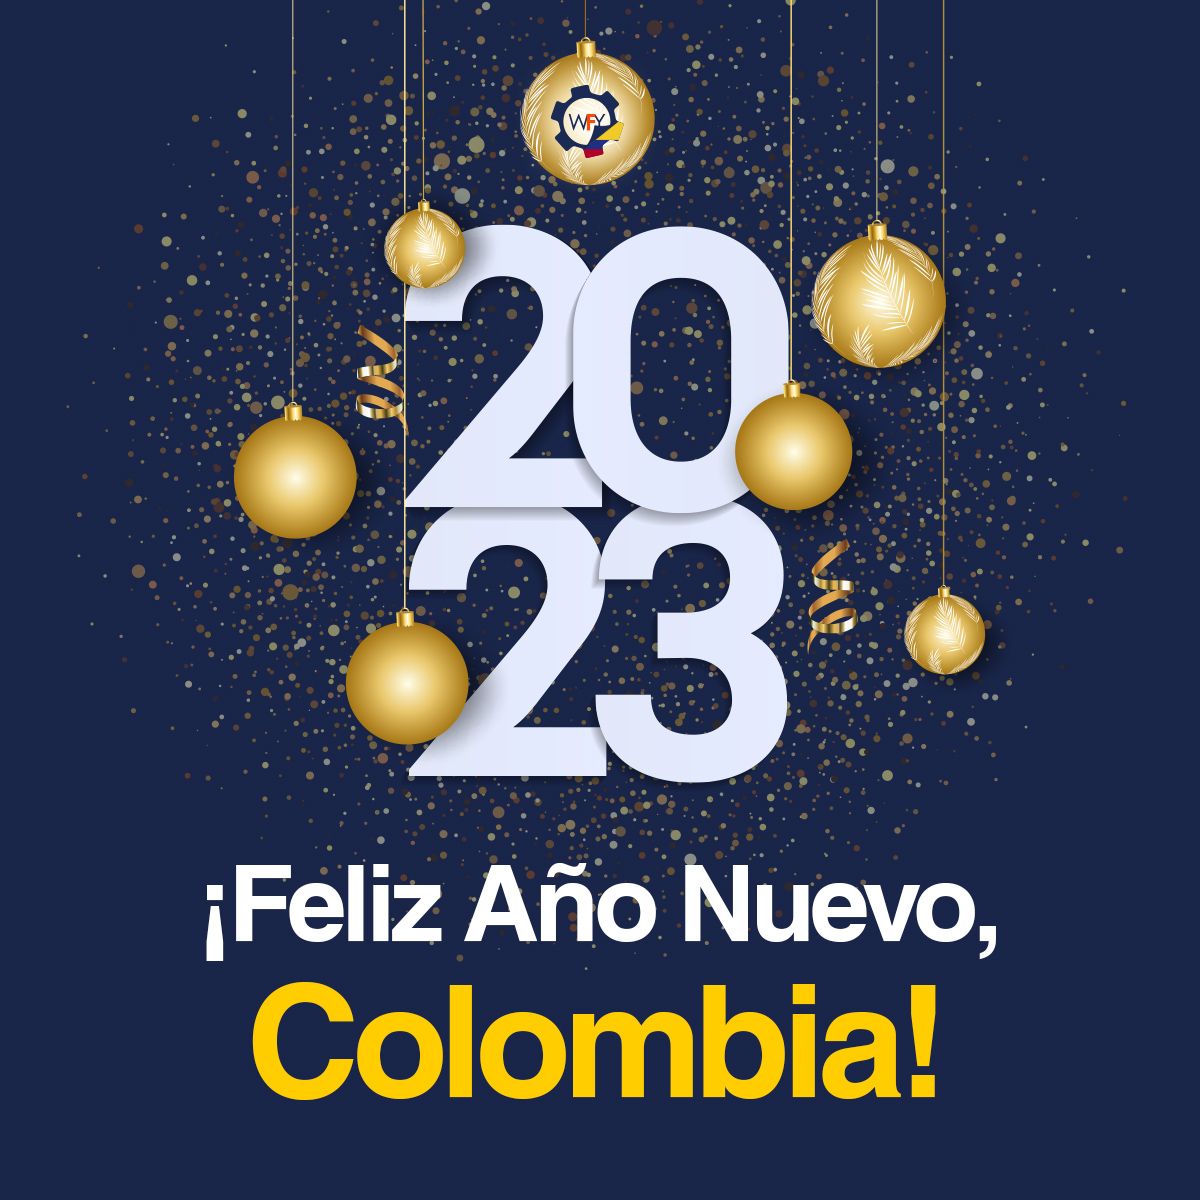 ¡Feliz Año Nuevo, Colombia!